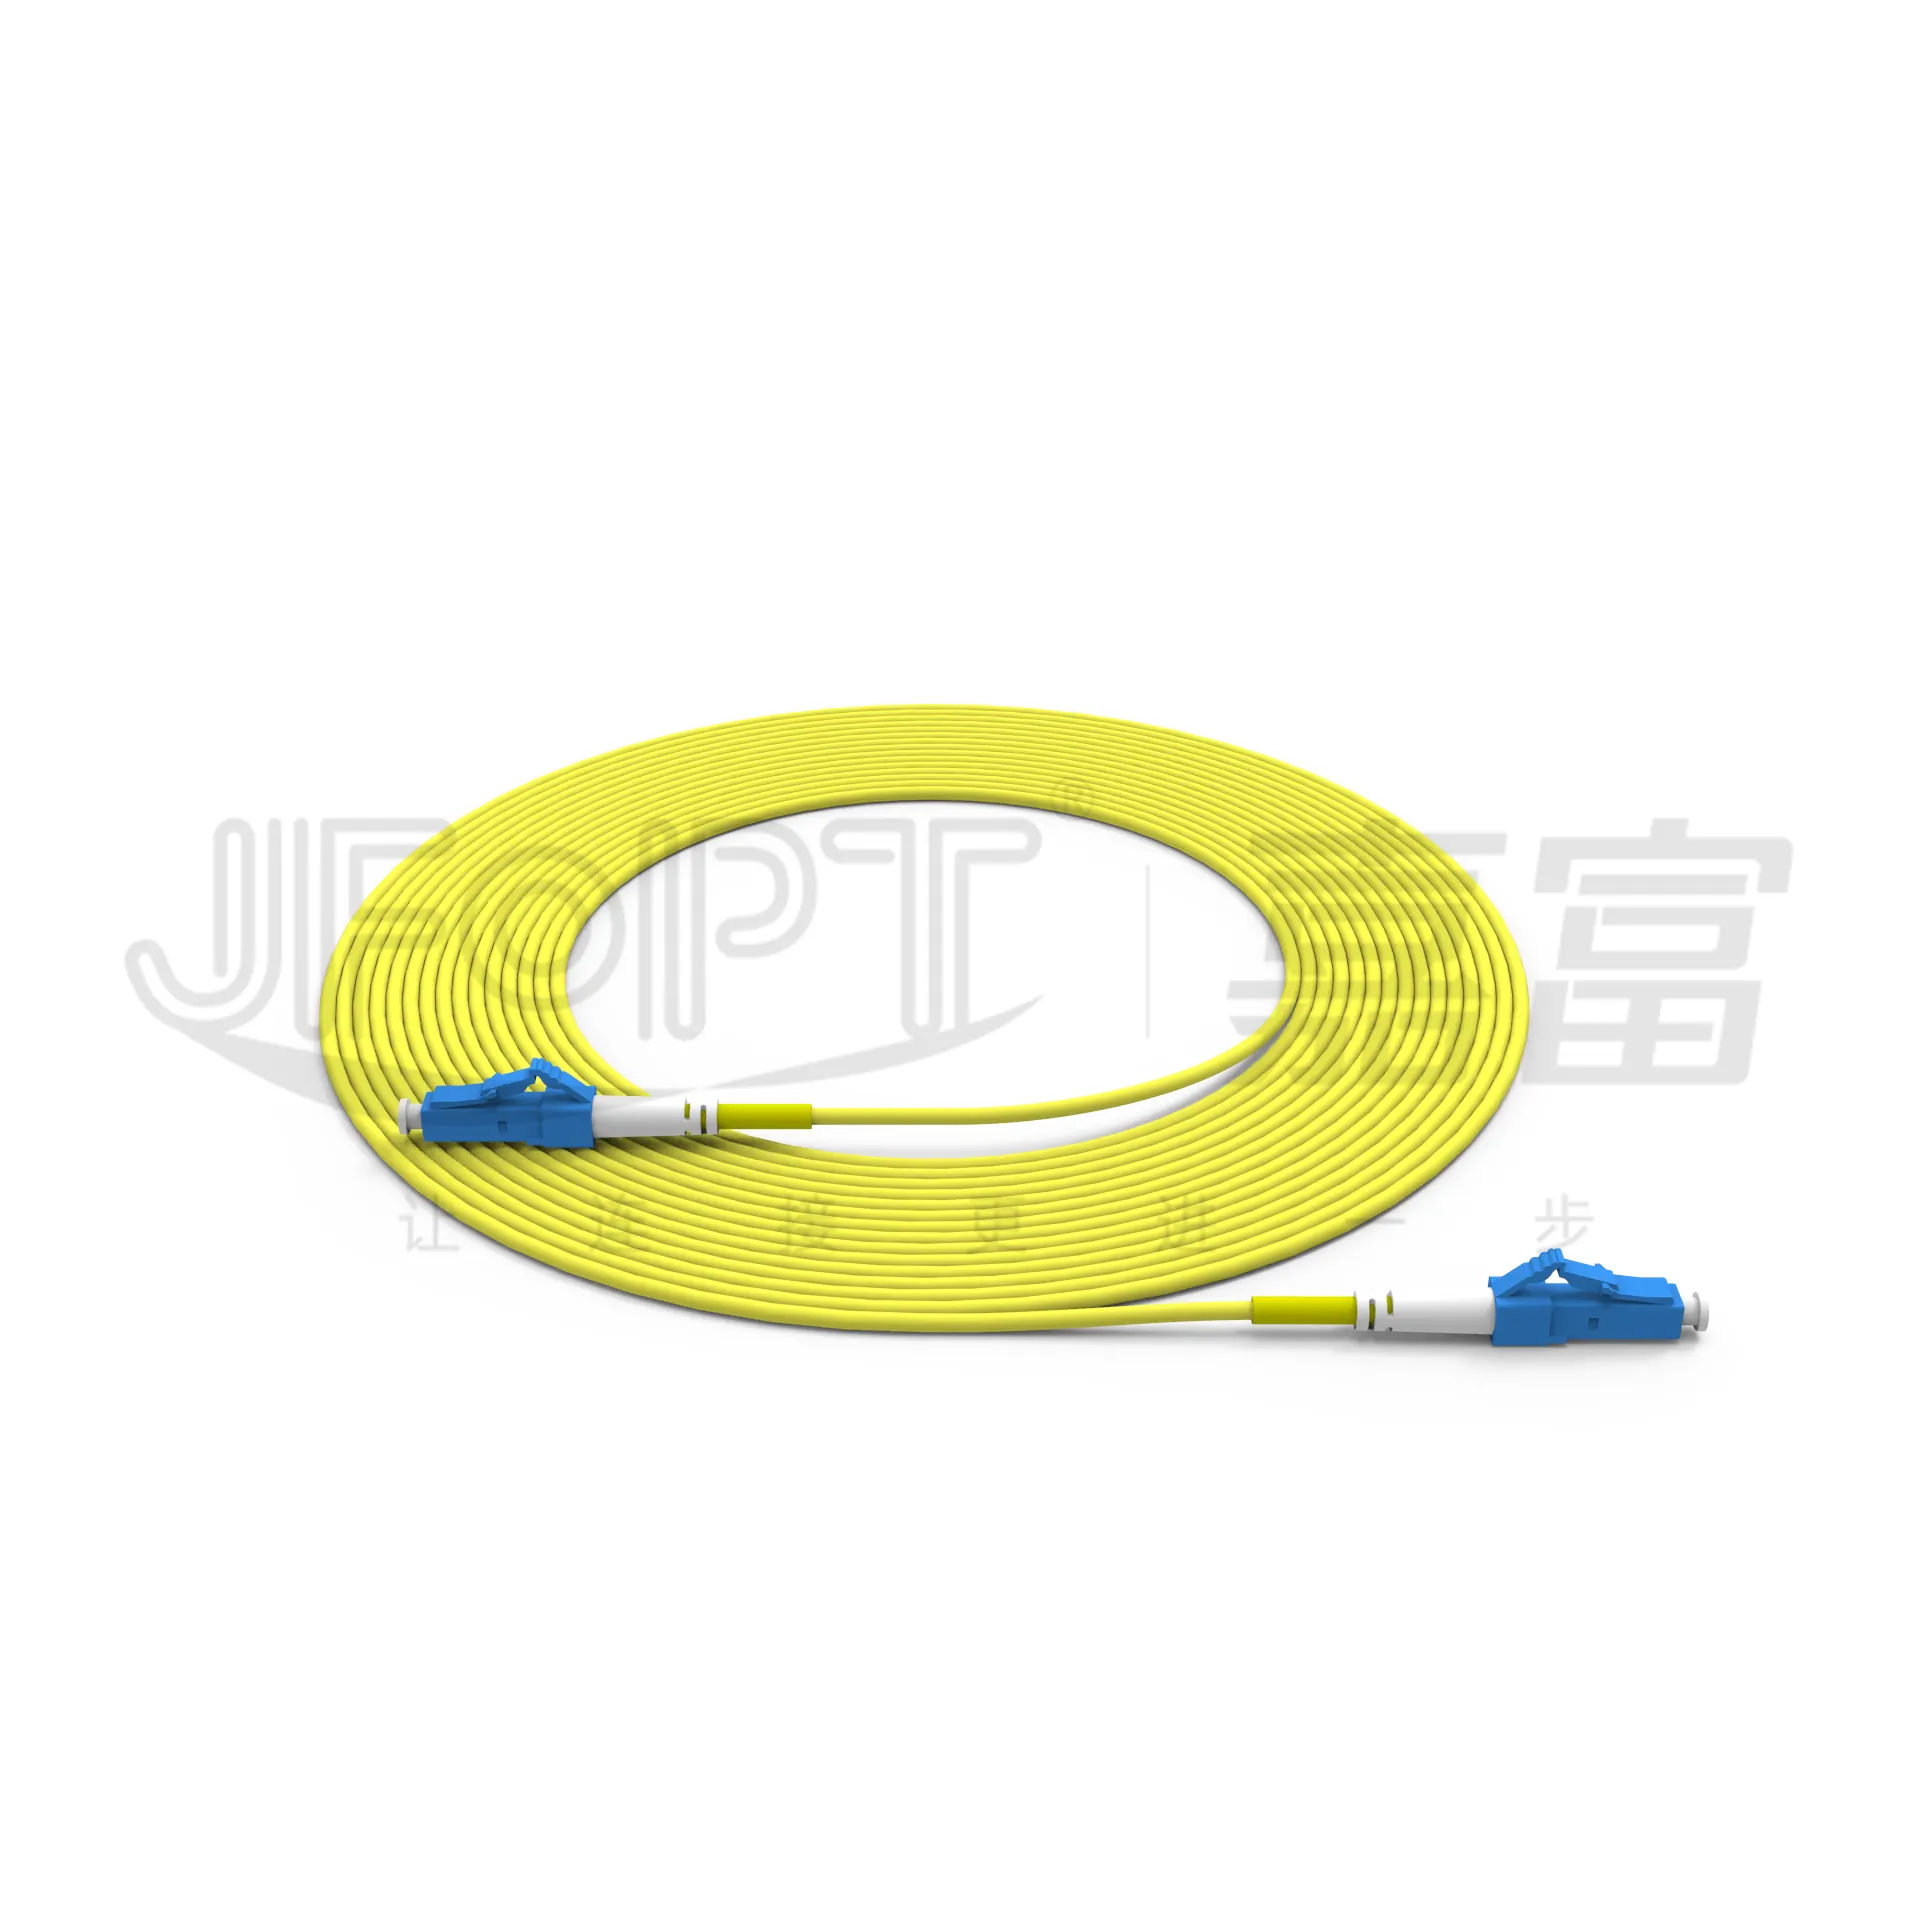 Venta caliente LC Cable de conexión de fibra óptica OM3 OM4 Precio de fábrica Simplex Duplex LC APC Cable óptico de caída de puente de fibra de modo único